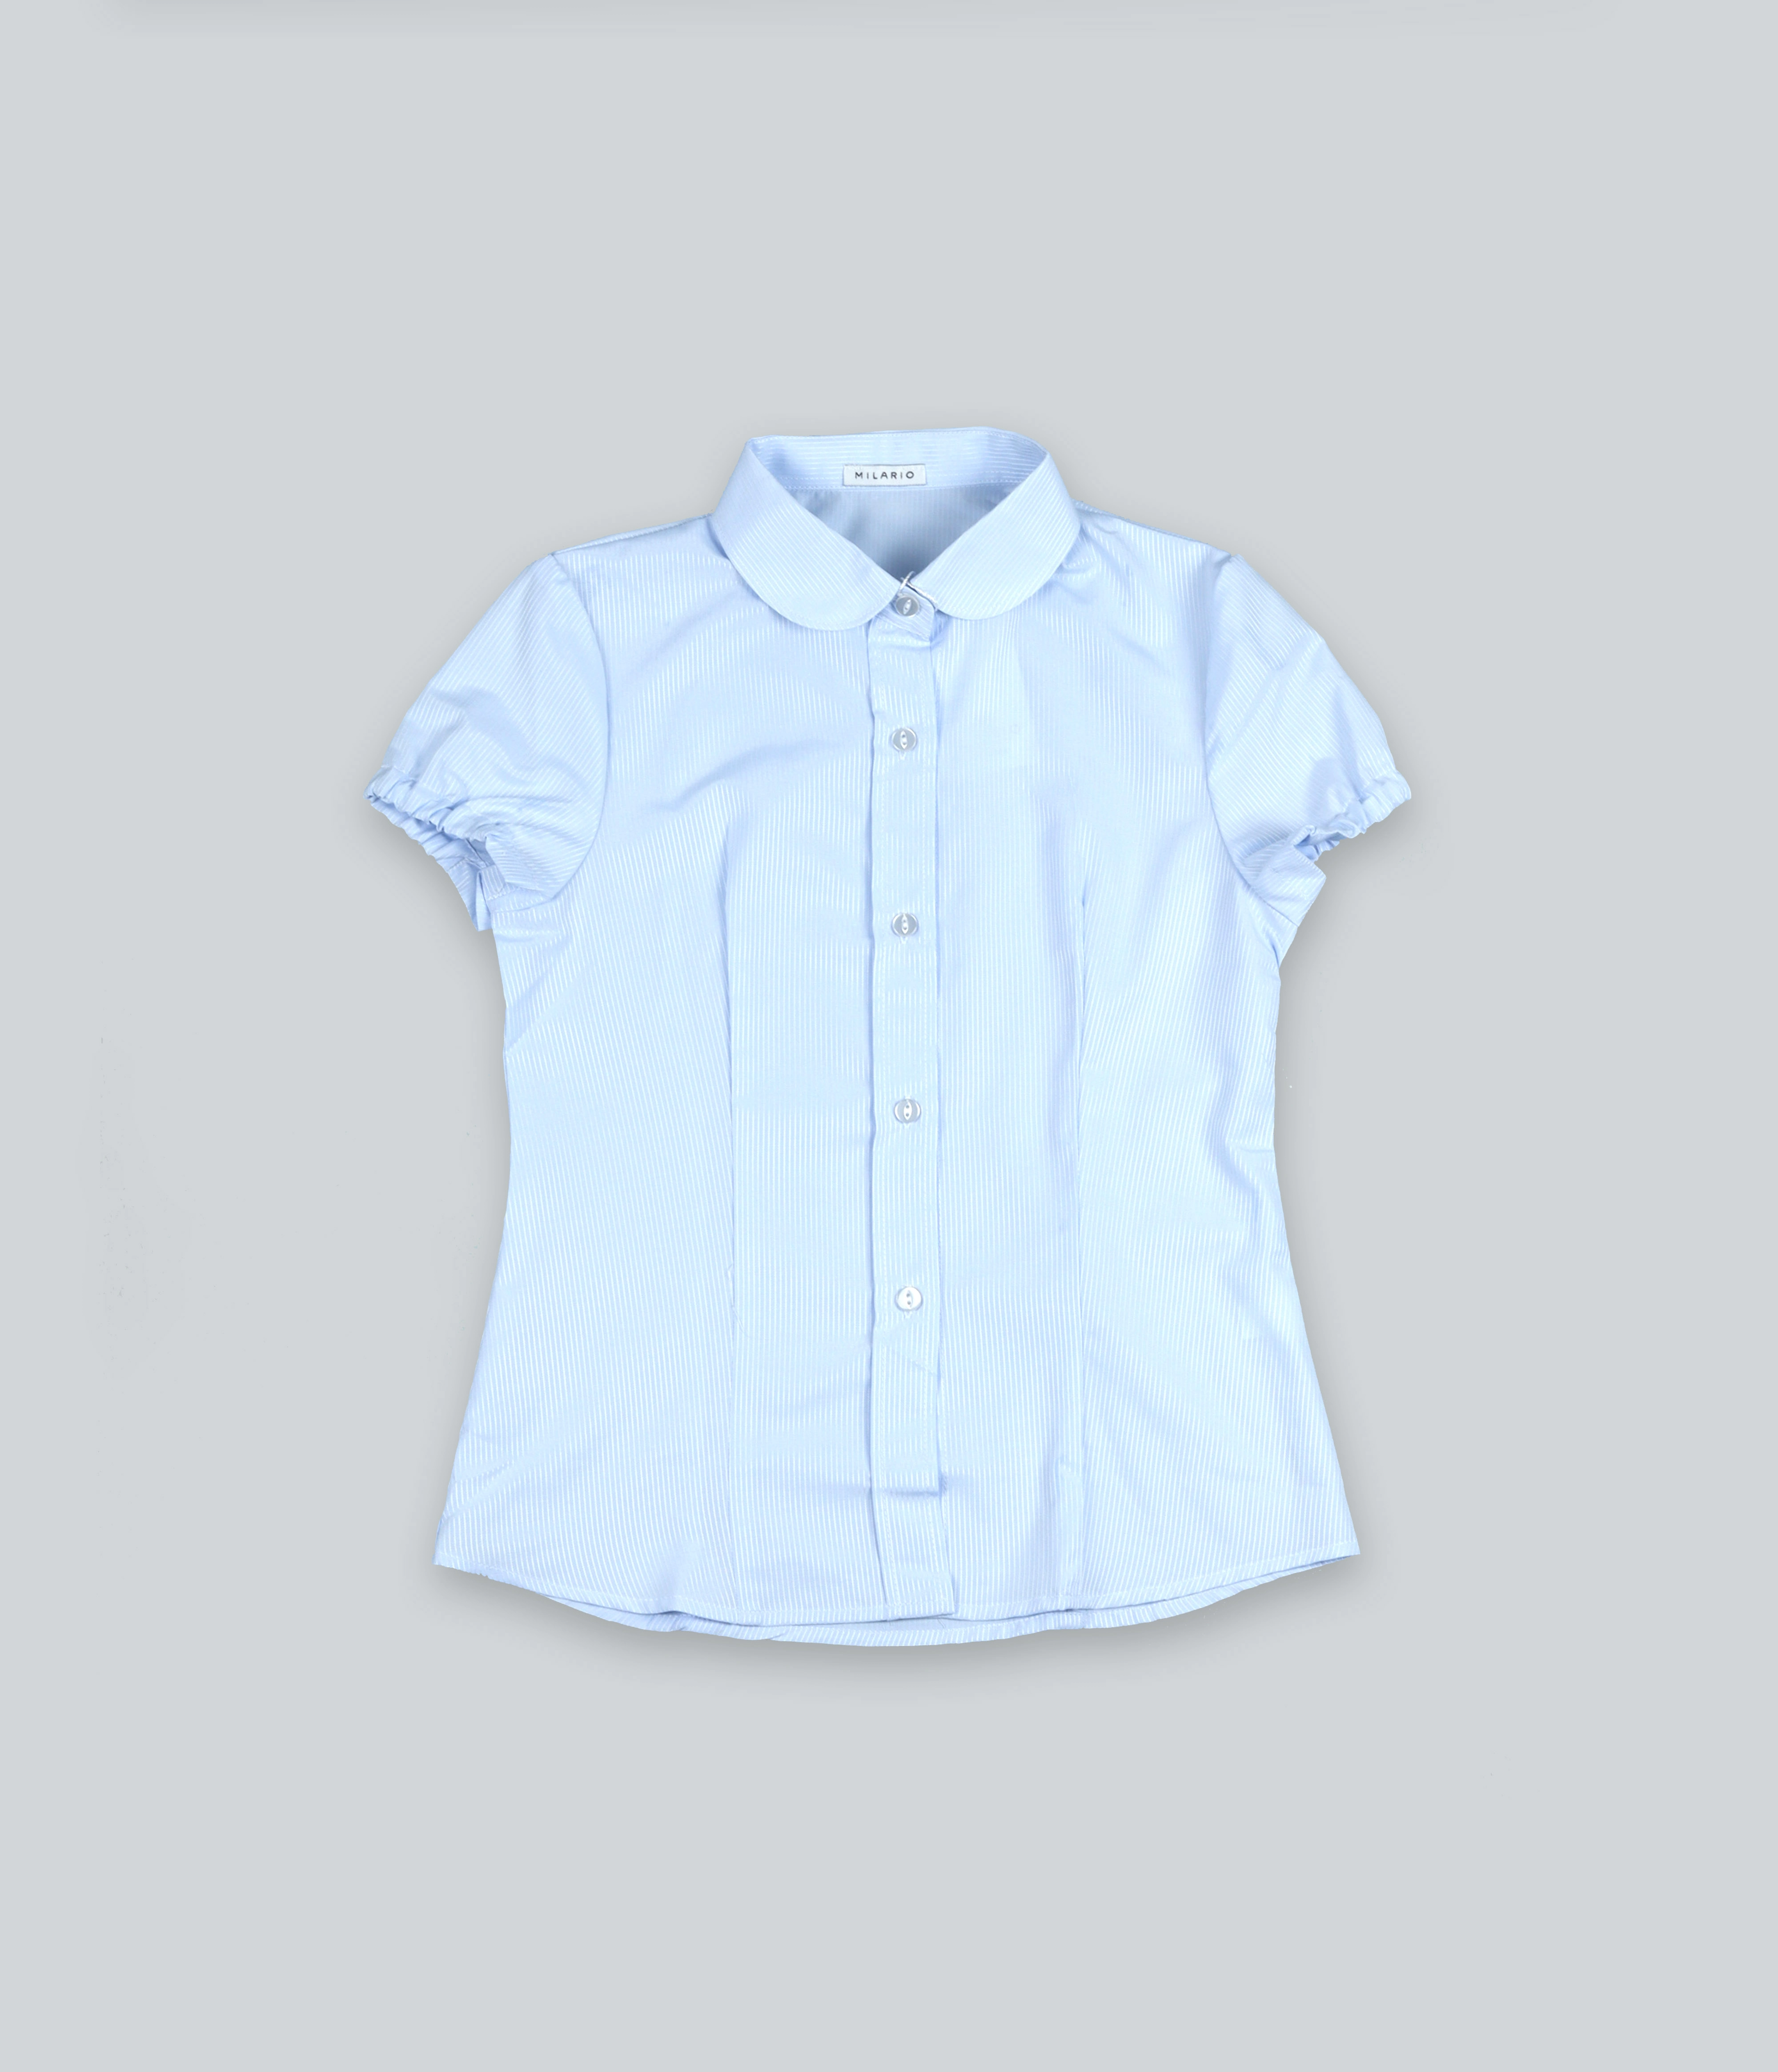 Голубая блузка в полоску с короткими рукавами MILARIO